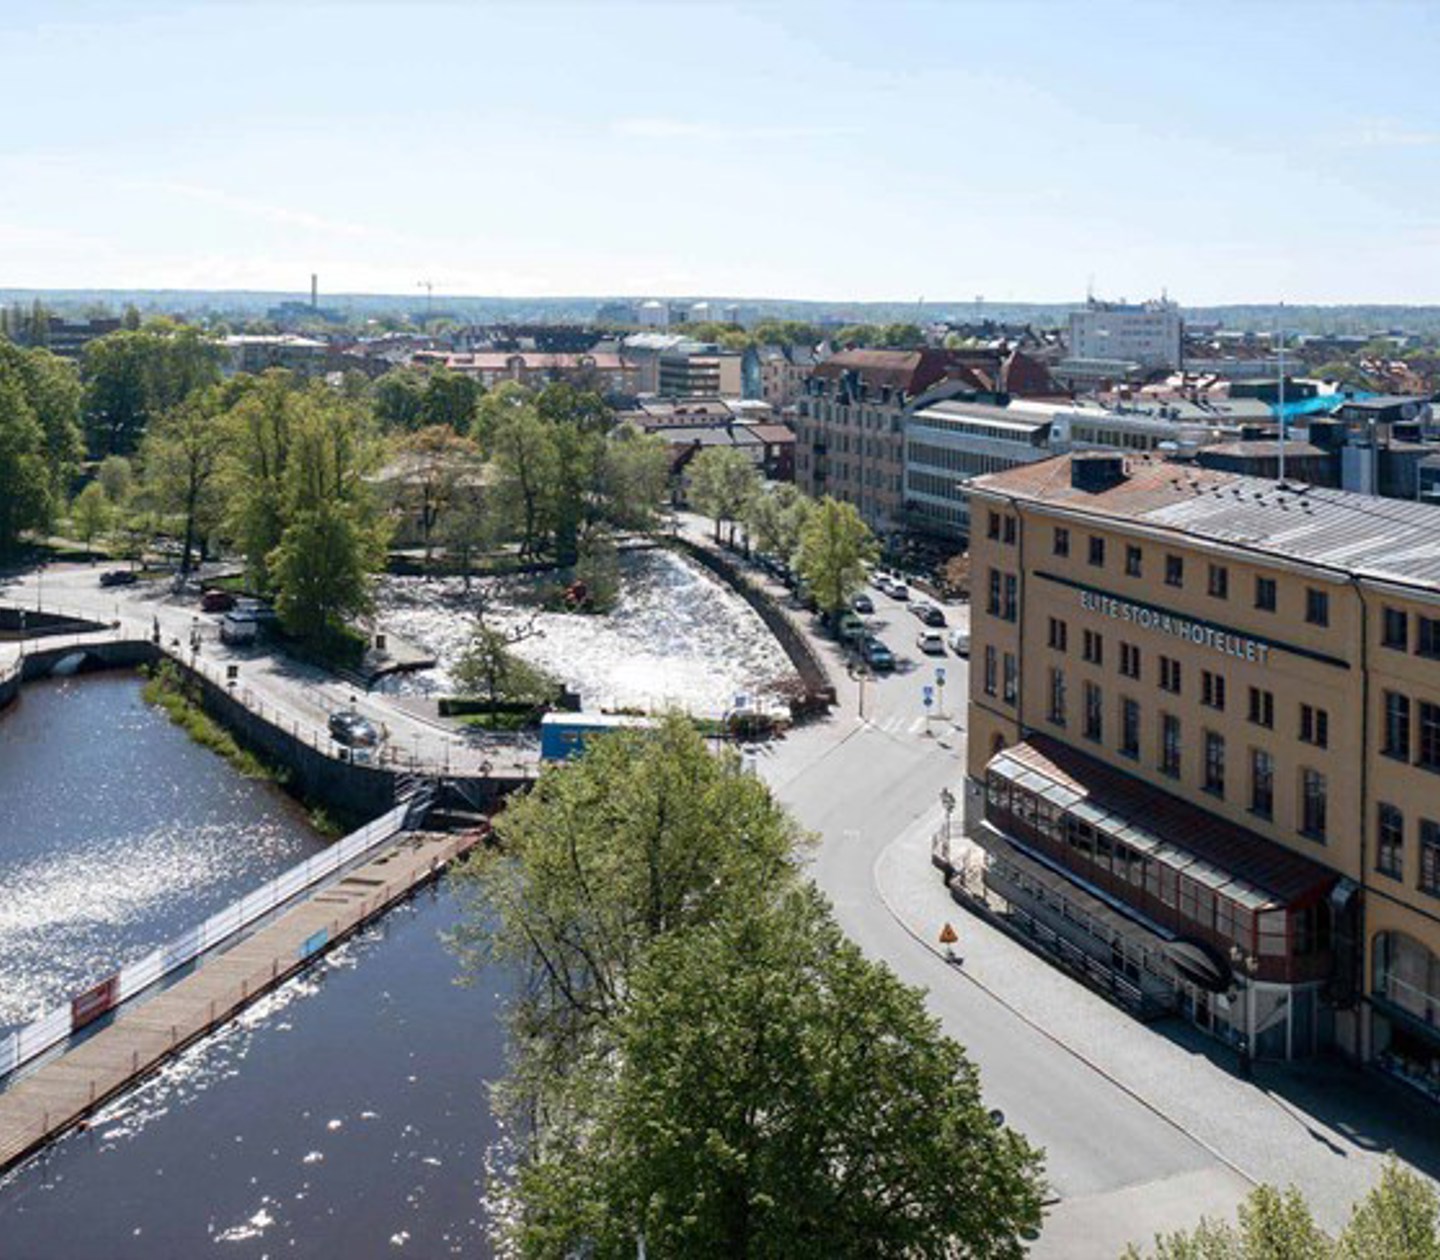 View over parts of Örebro